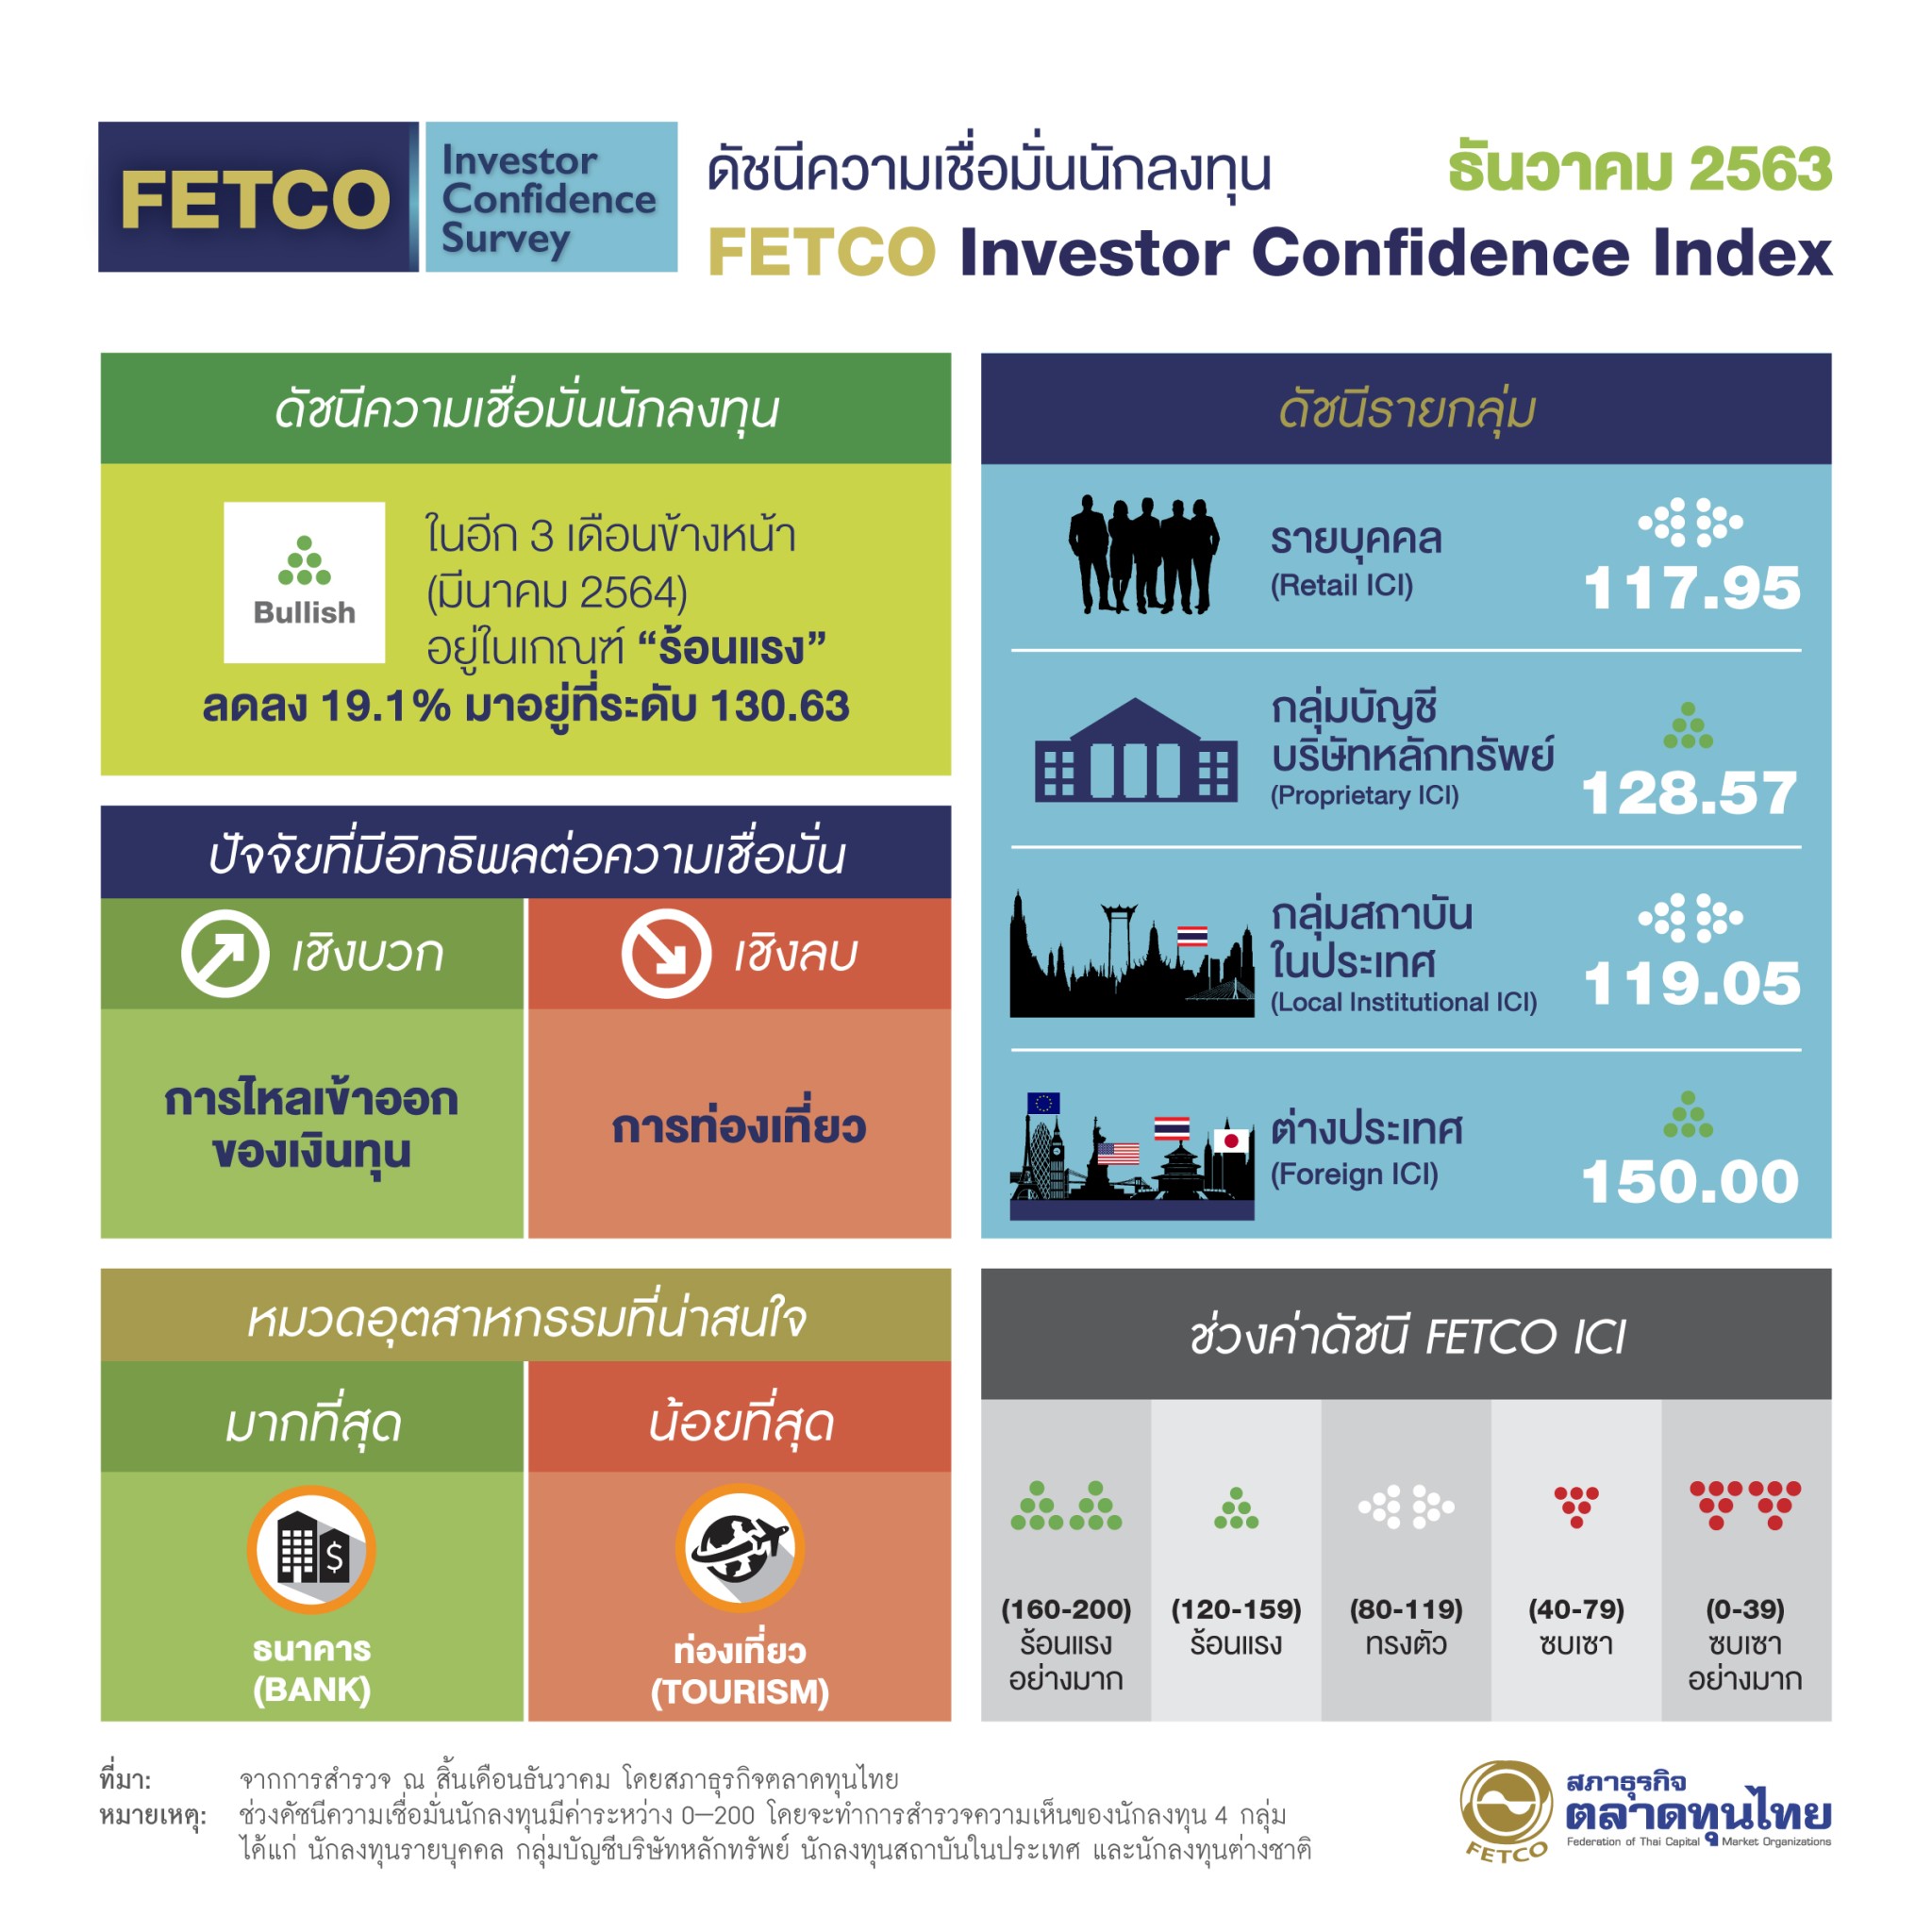 FETCO เผยผลสำรวจดัชนีความเชื่อมั่นนักลงทุน 3 เดือนข้างหน้าคงระดับเกณฑ์ร้อนแรง